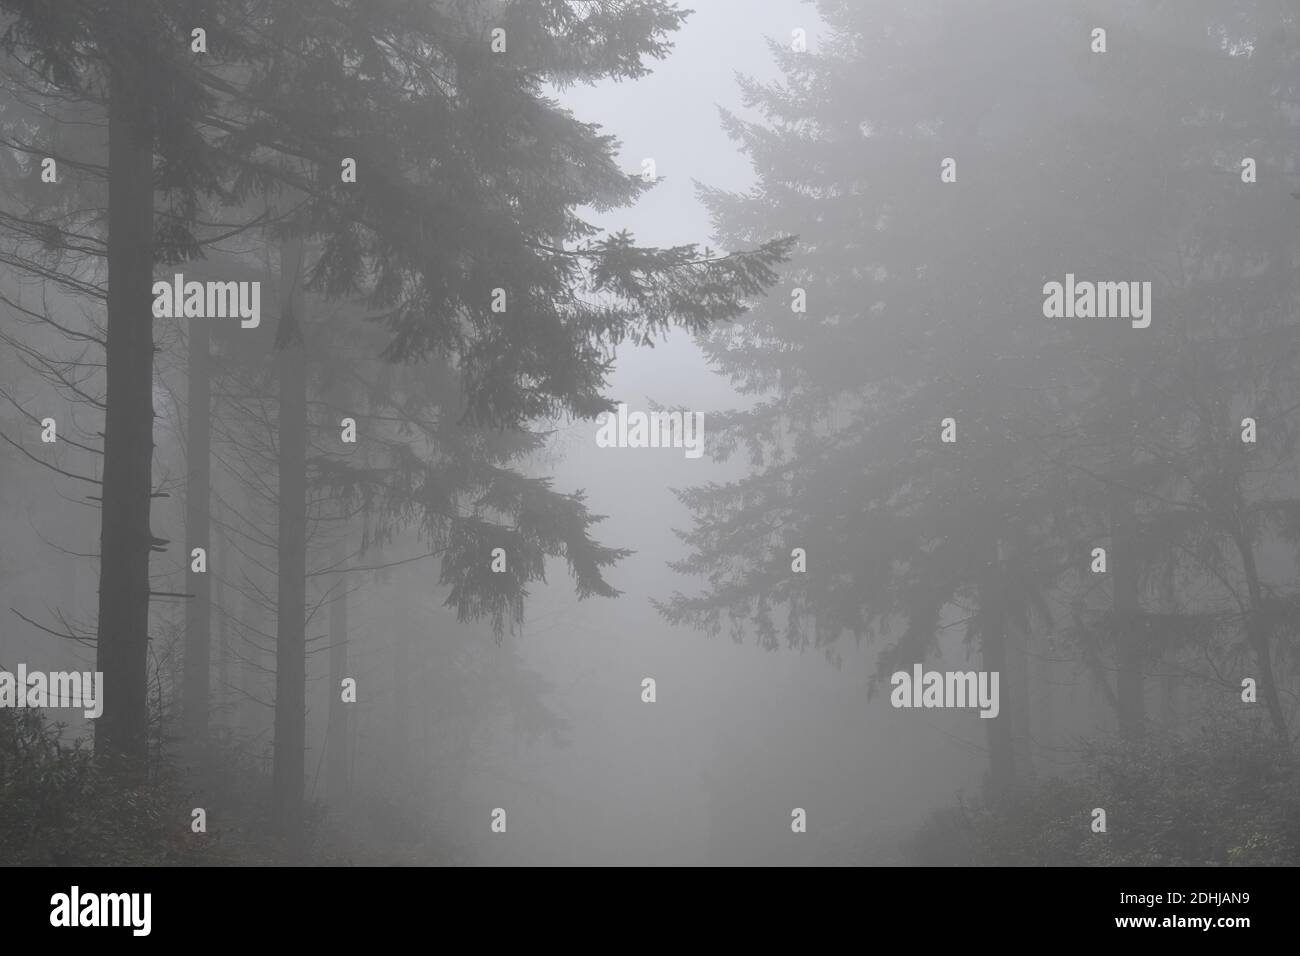 Stock immagini di nebbia in bosco - North Downs vicino West Horsley, Surrey.- Dick Focks comune - Commissione forestale. L'immagine mostra nebbia, alberi, nebbia in questa pittoresca area di Surrey. Foto scattata il 7 dicembre 2020 Foto Stock